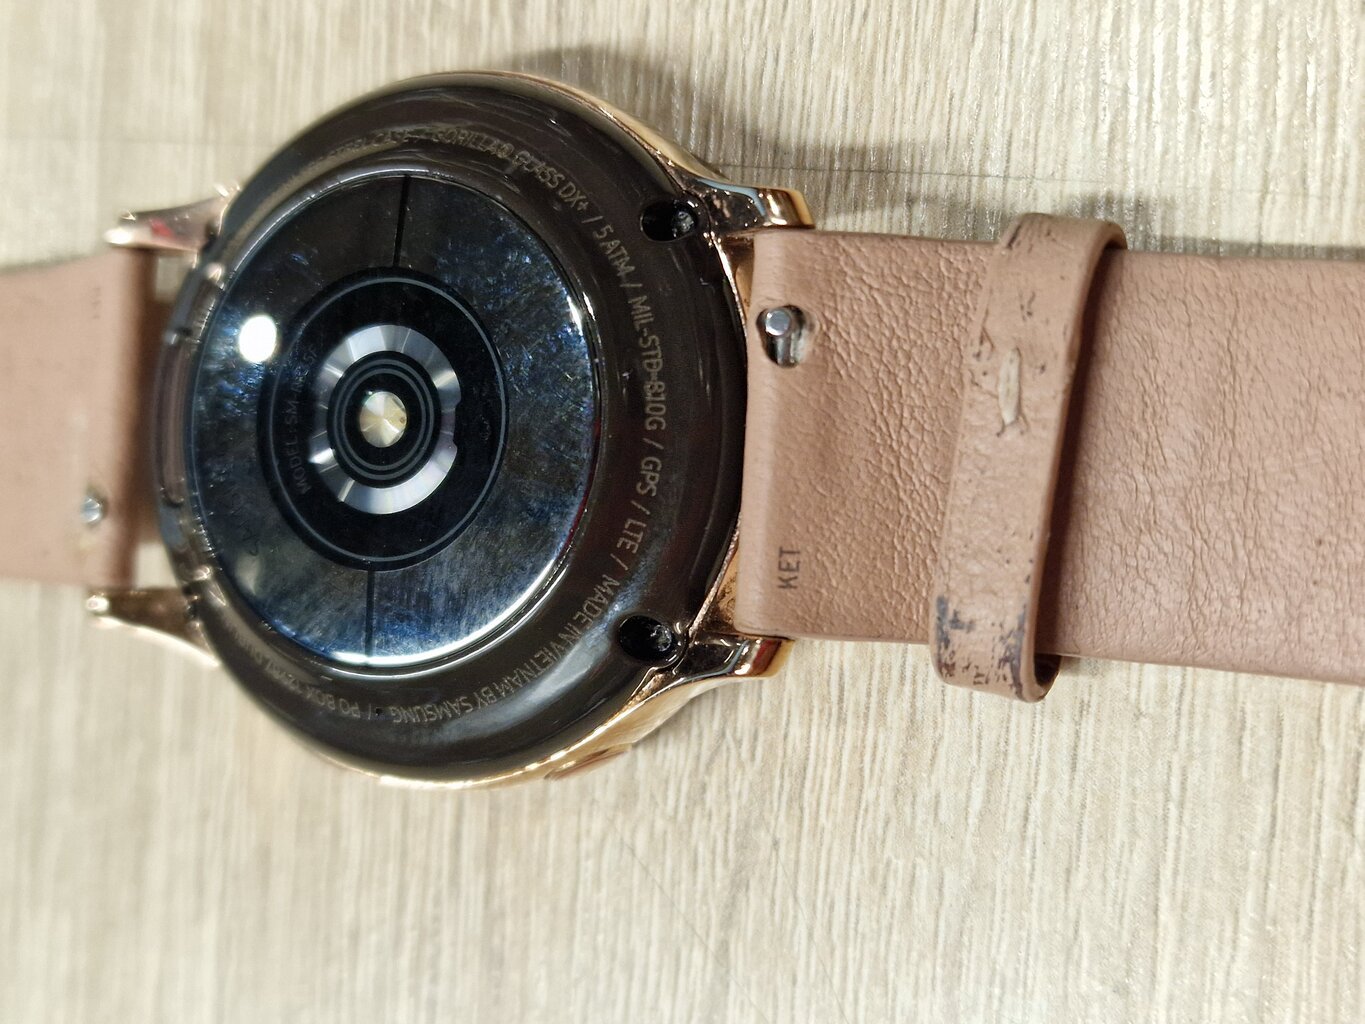 Prekė su pažeidimu.Samsung Galaxy Watch Active2 SM-R835F Pink Gold цена и информация | Prekės su pažeidimu | pigu.lt